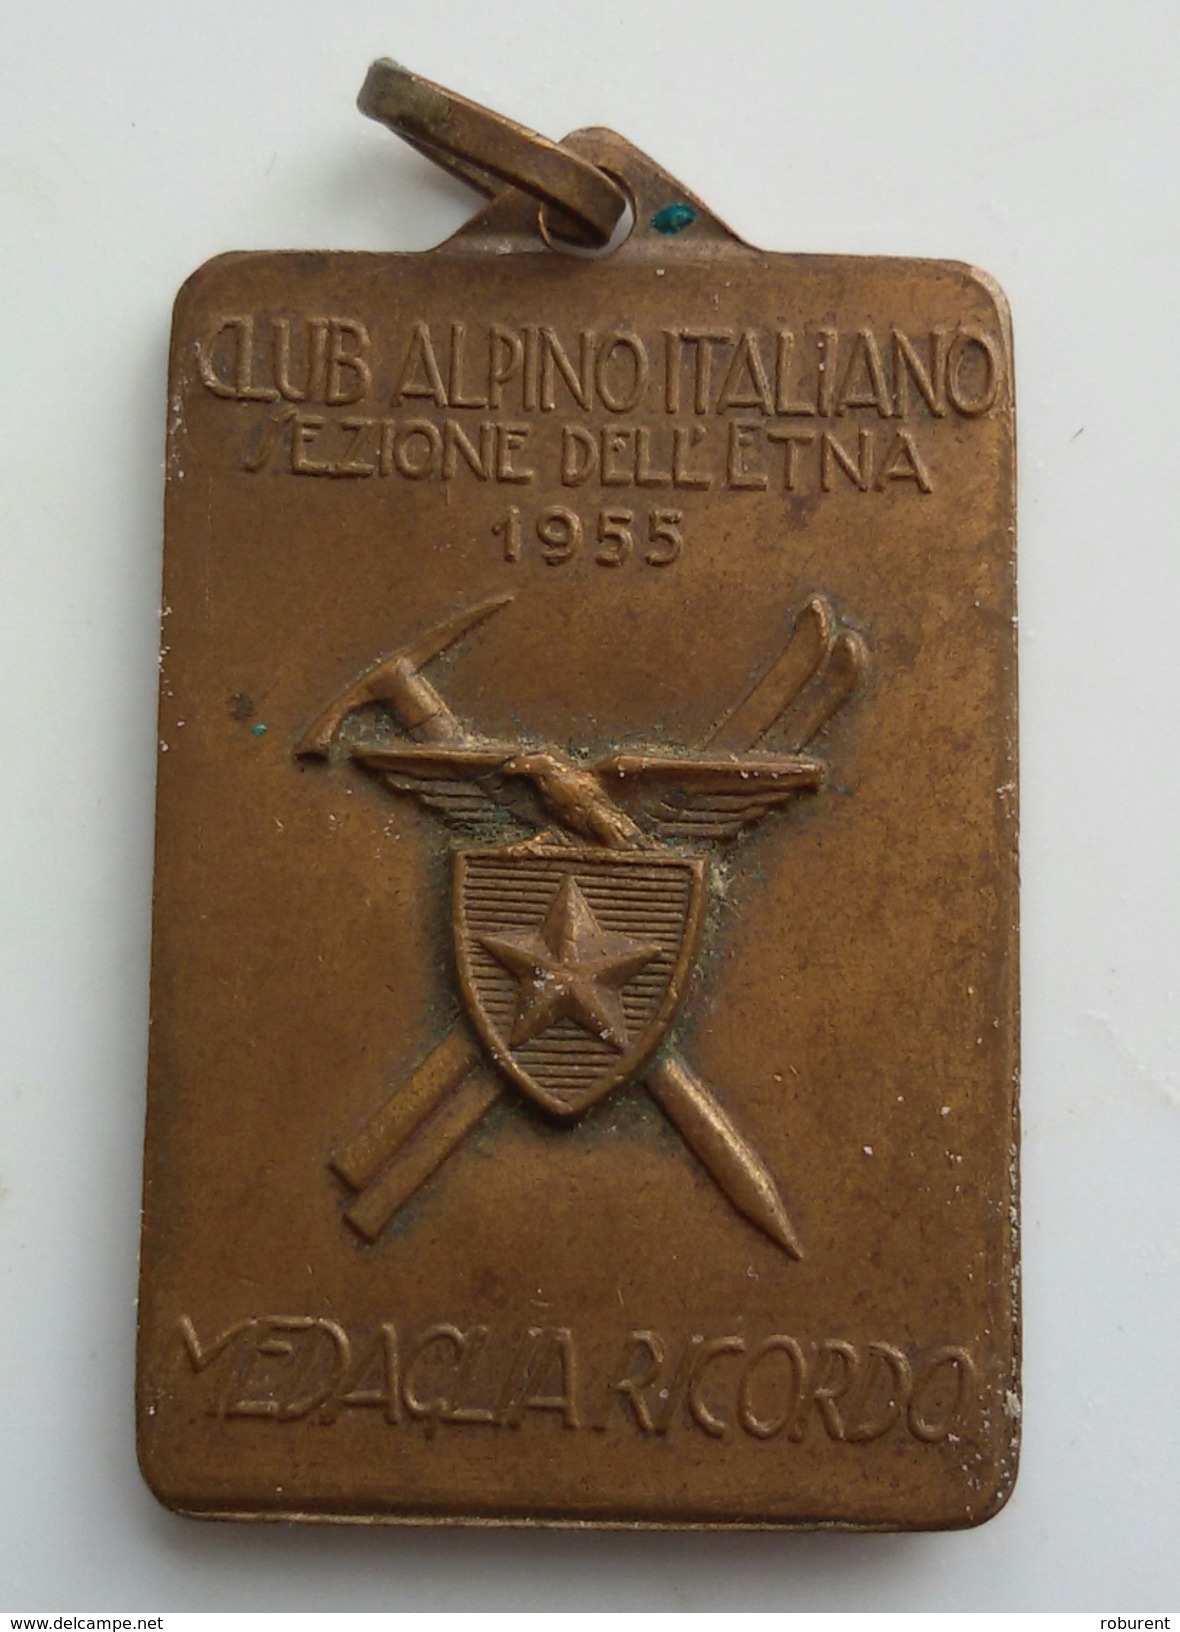 MEDAGLIA - CLUB ALPINO ITALIANO-SEZIONE DELL'ETNA 1955 - "TROFEO DELL'ETNA INTERNAZIONALE SCI ALPINISTICA" - Winter Sports